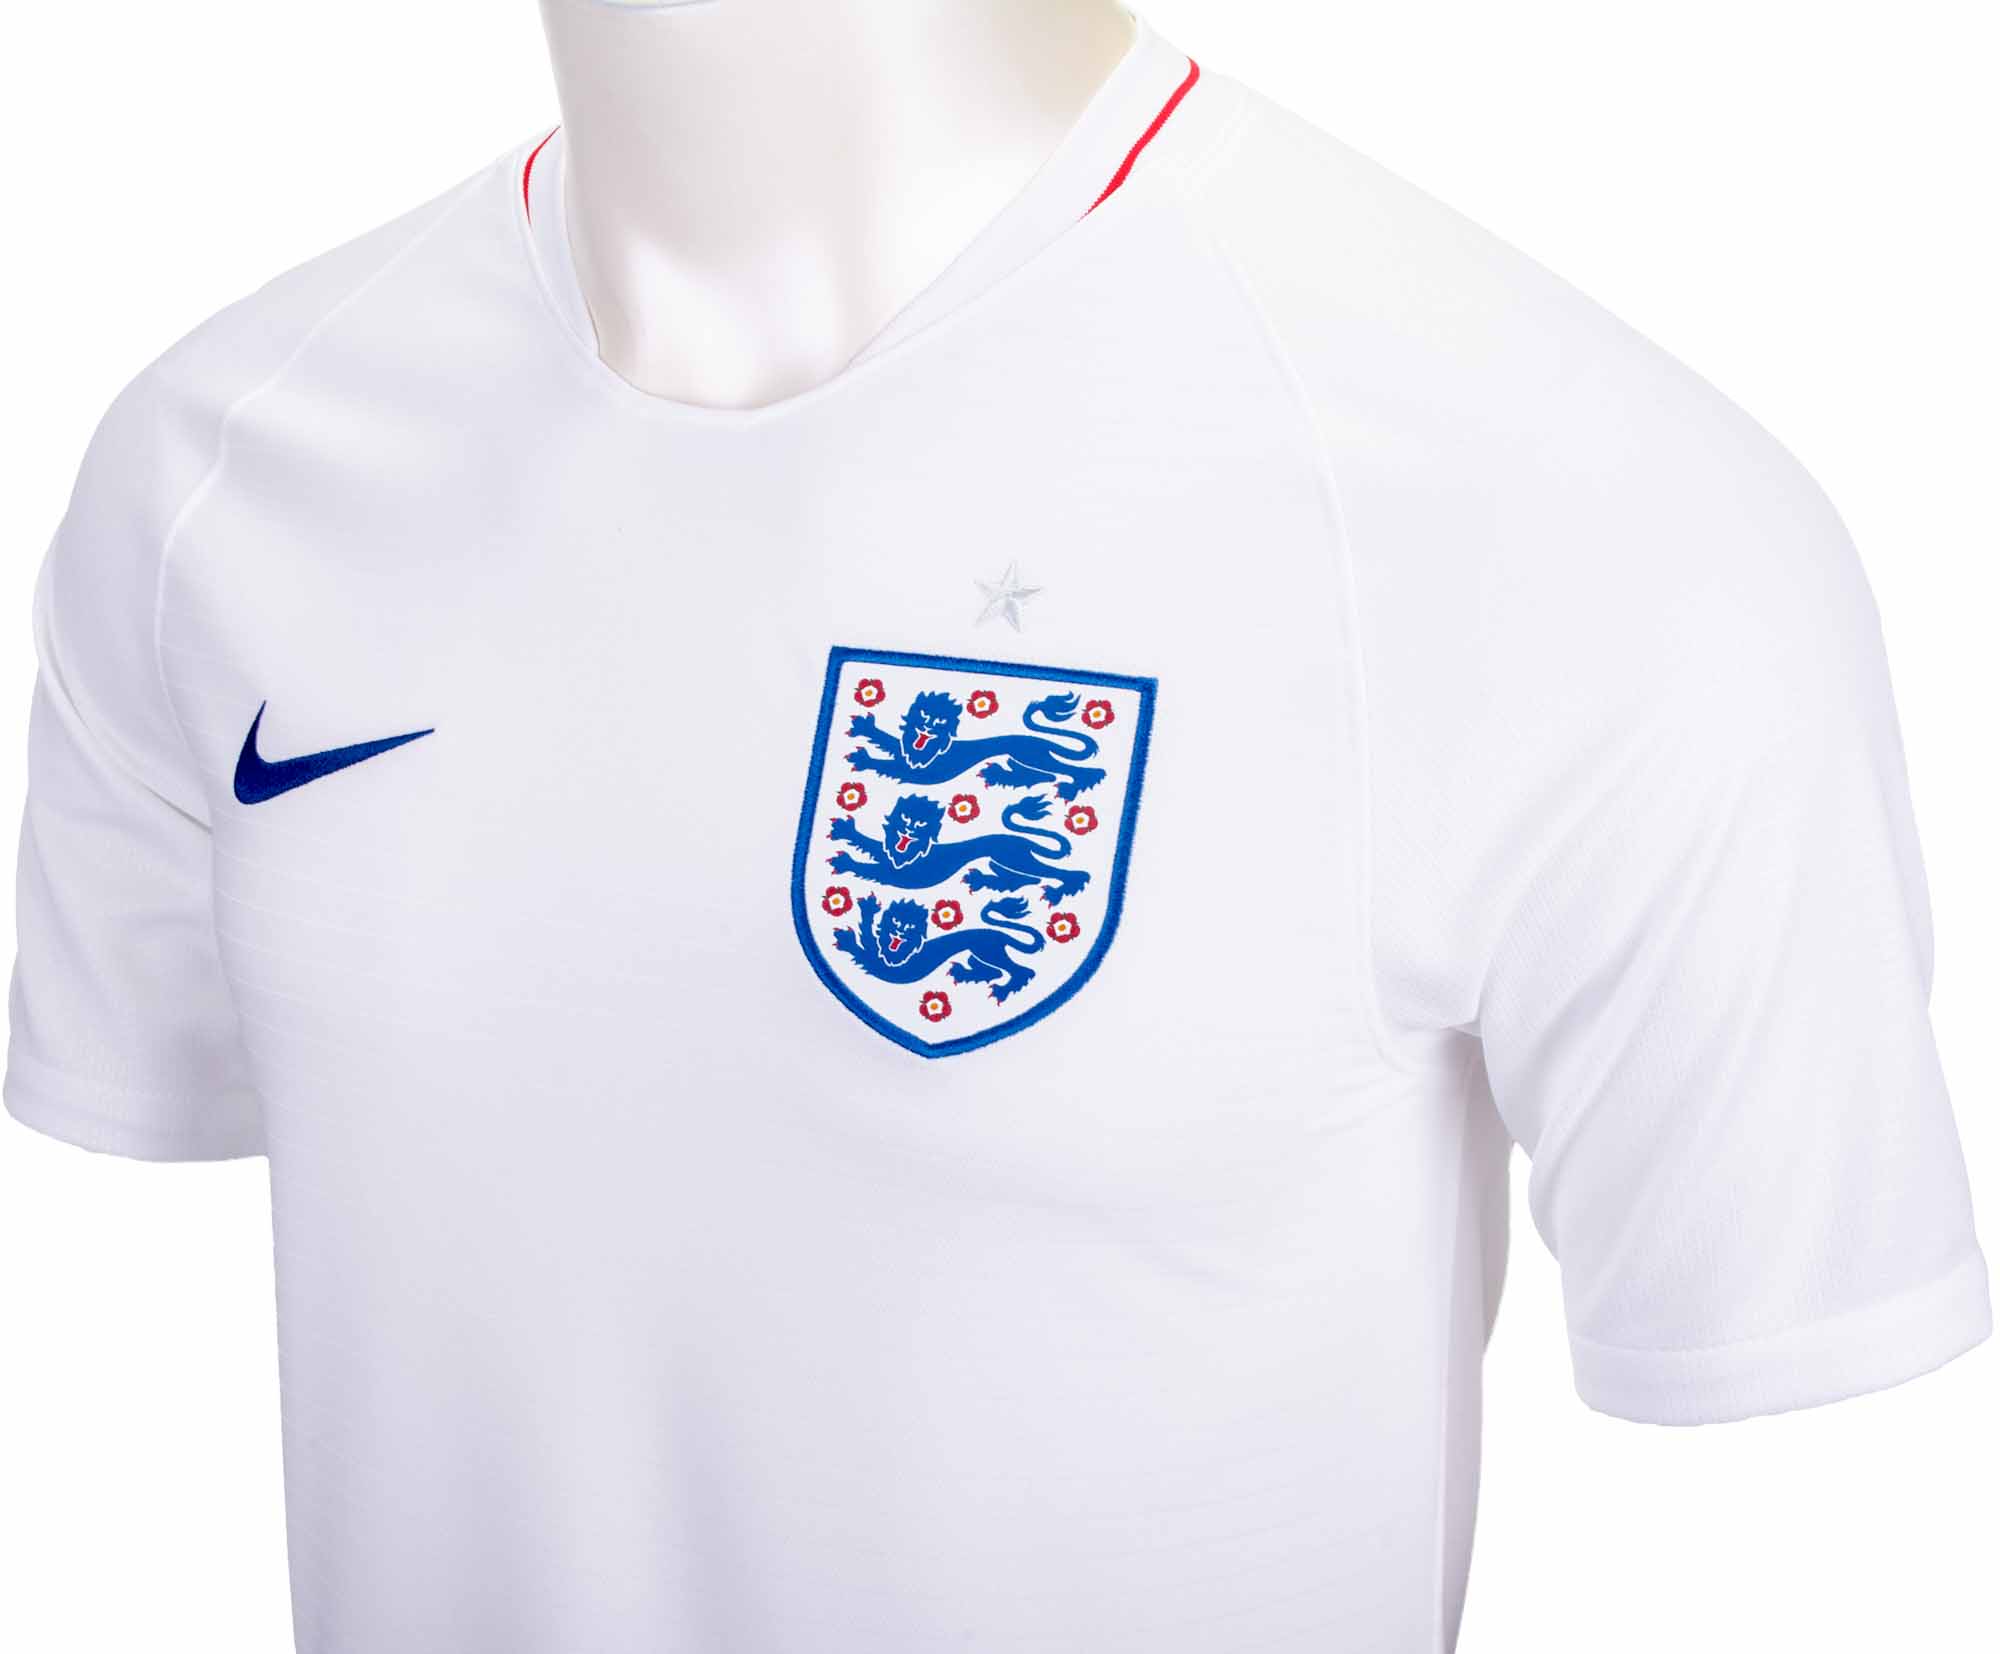 england soccer kit 2018